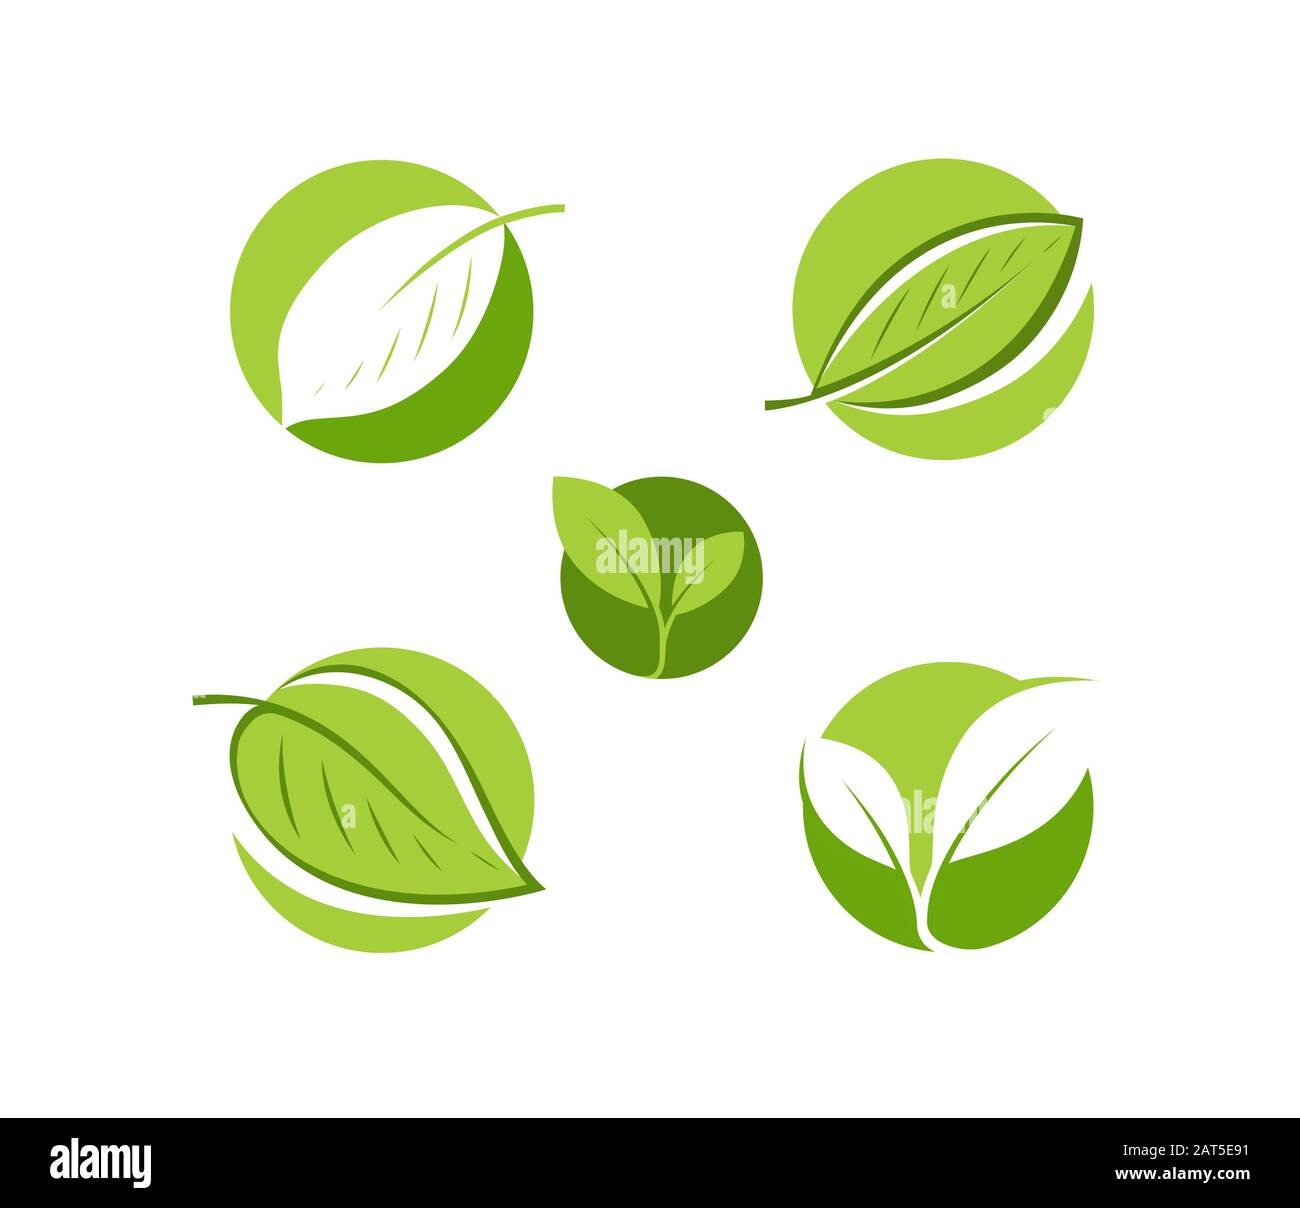 Natural product logo. Leaf symbol or label vector illustration Stock Vector